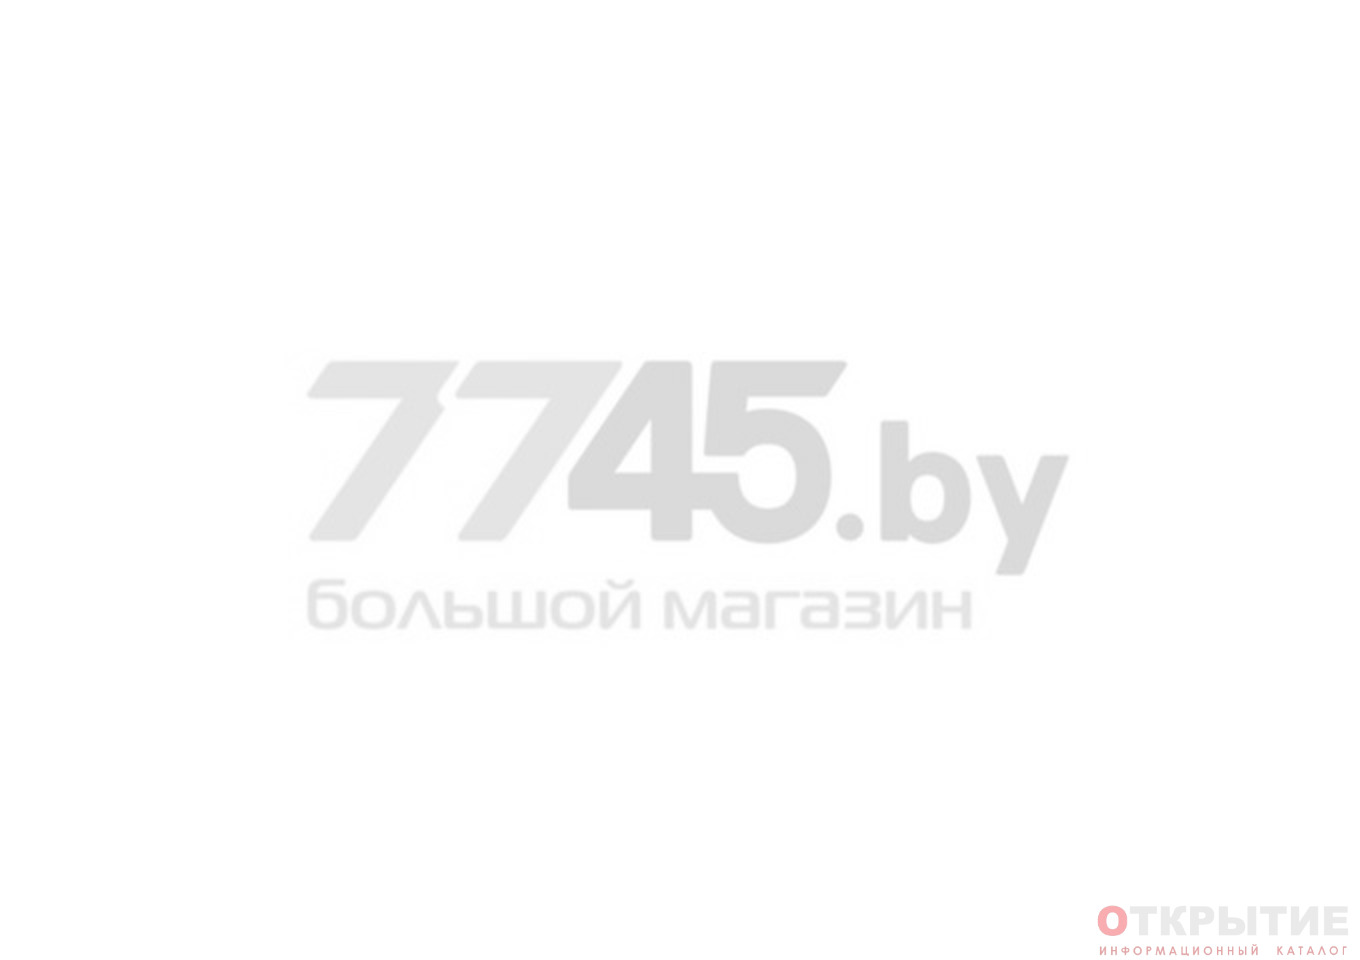 7745 Интернет Магазин Каталог Товаров Минск